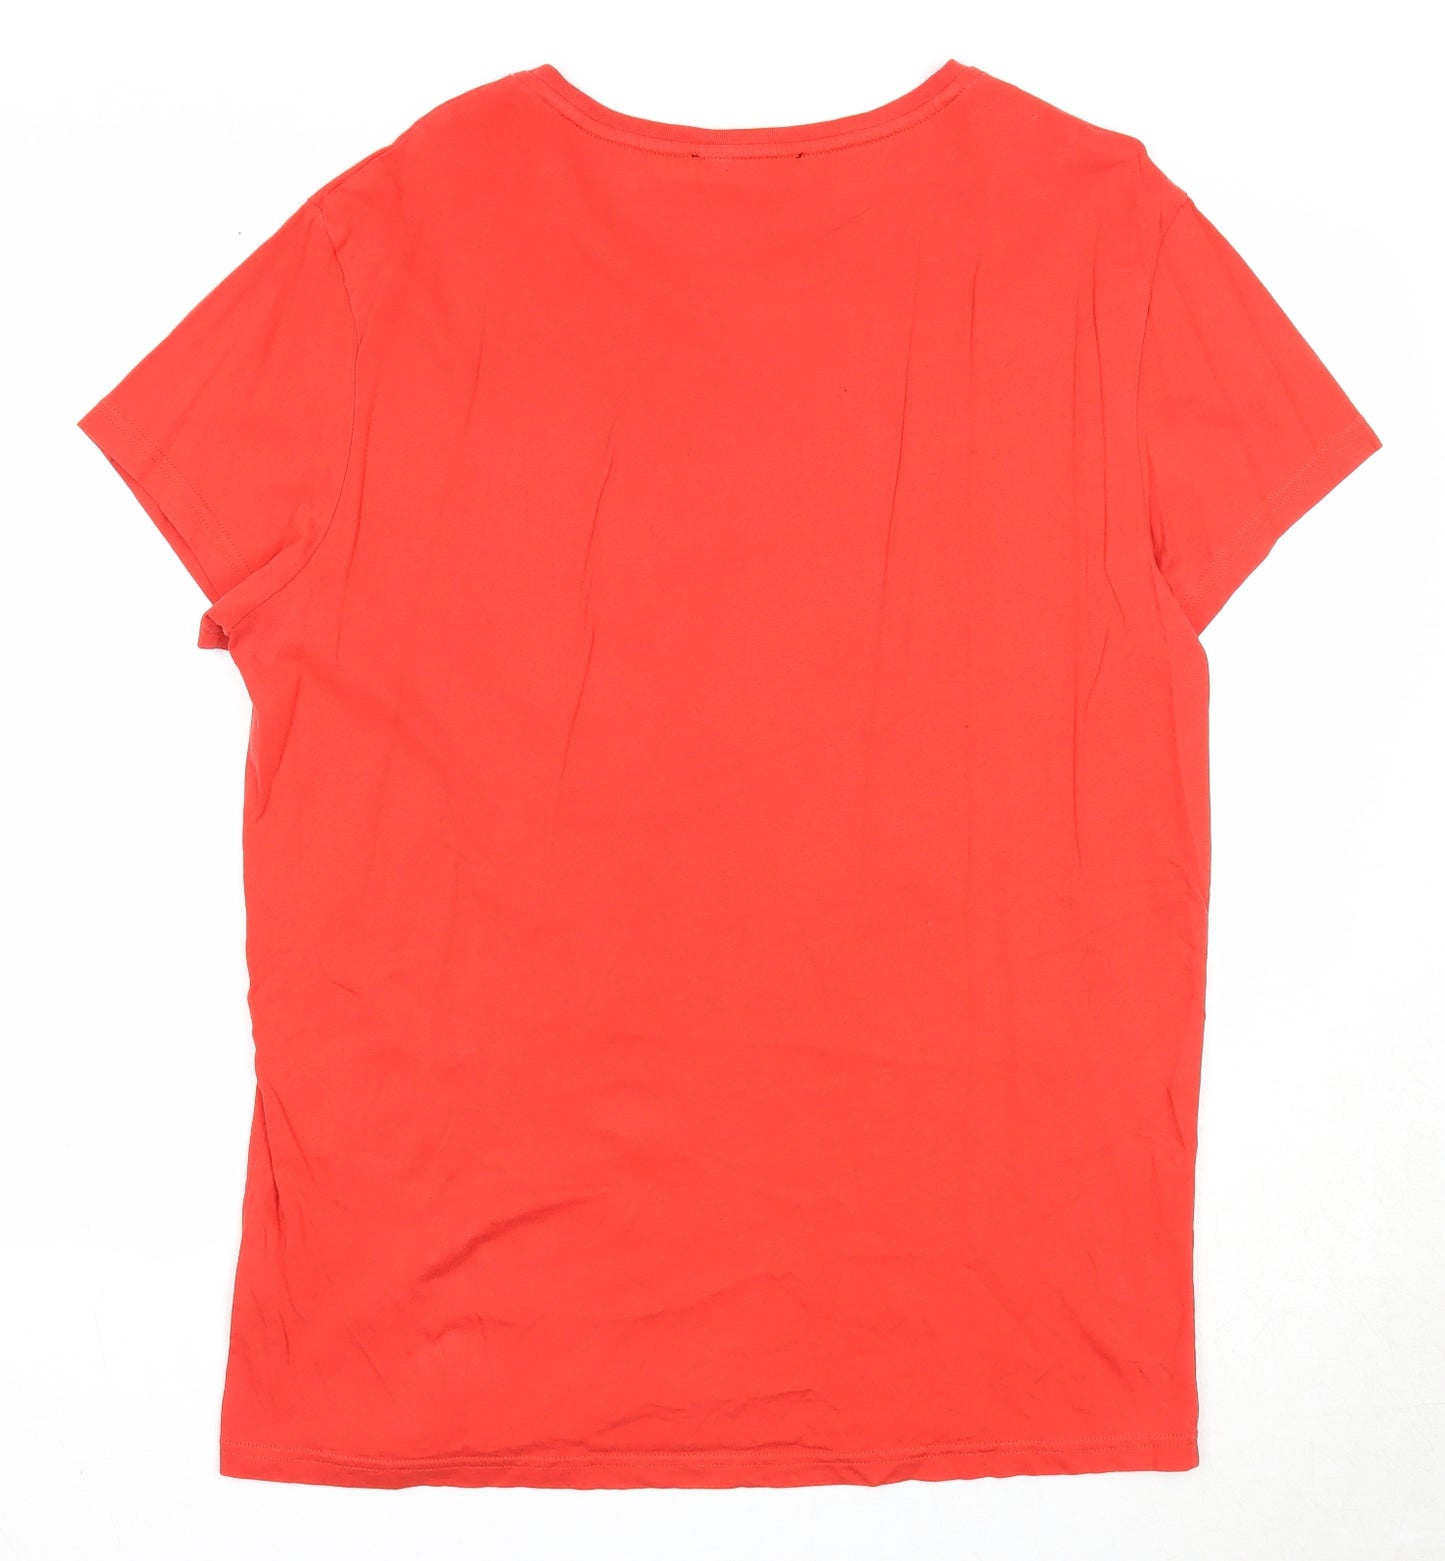 Calvin Klein Mens Red Cotton T-Shirt Size L Round Neck